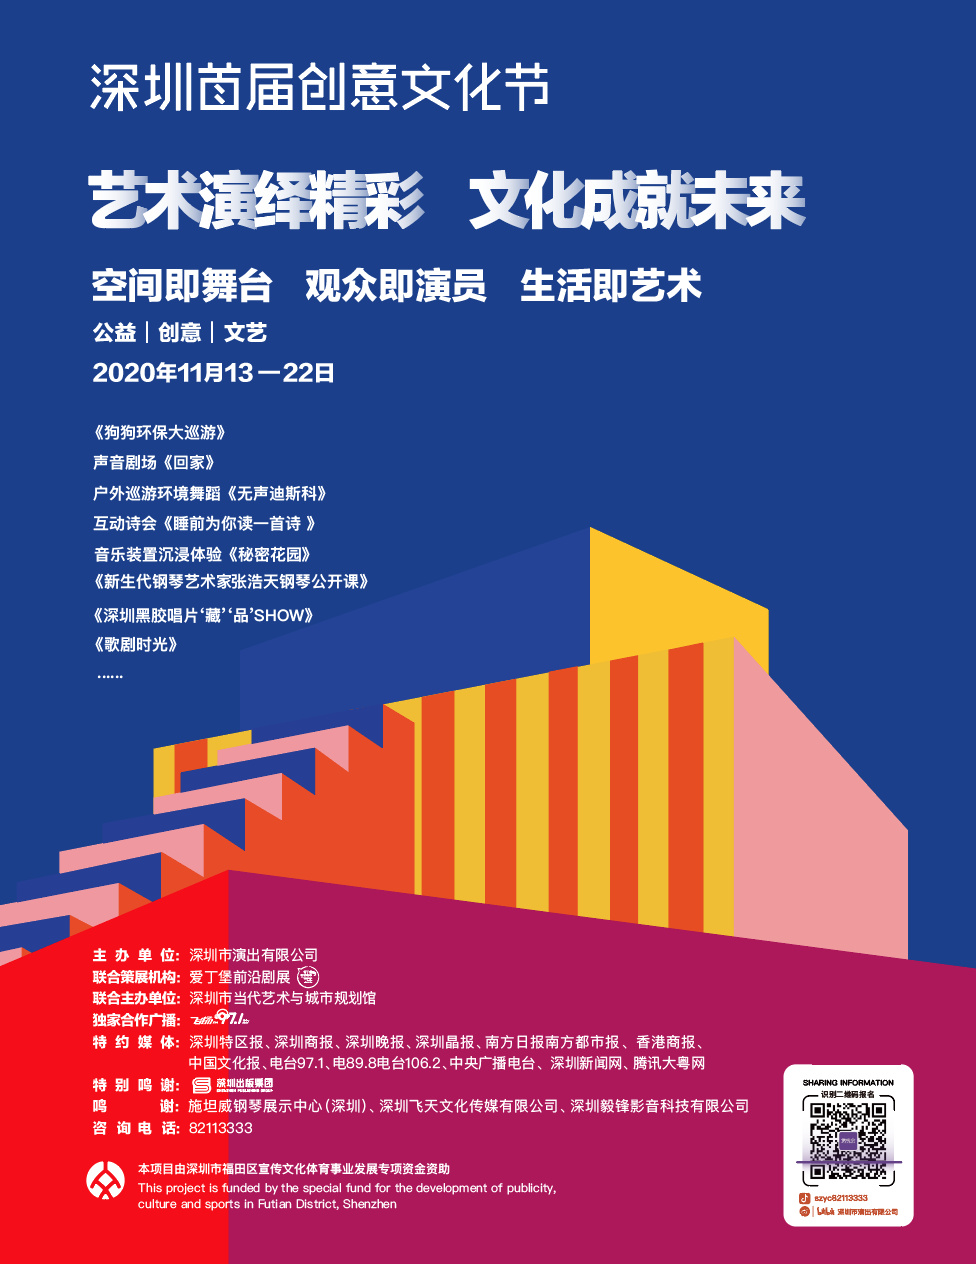 深圳首届创意文化节时间、地点及参与方式